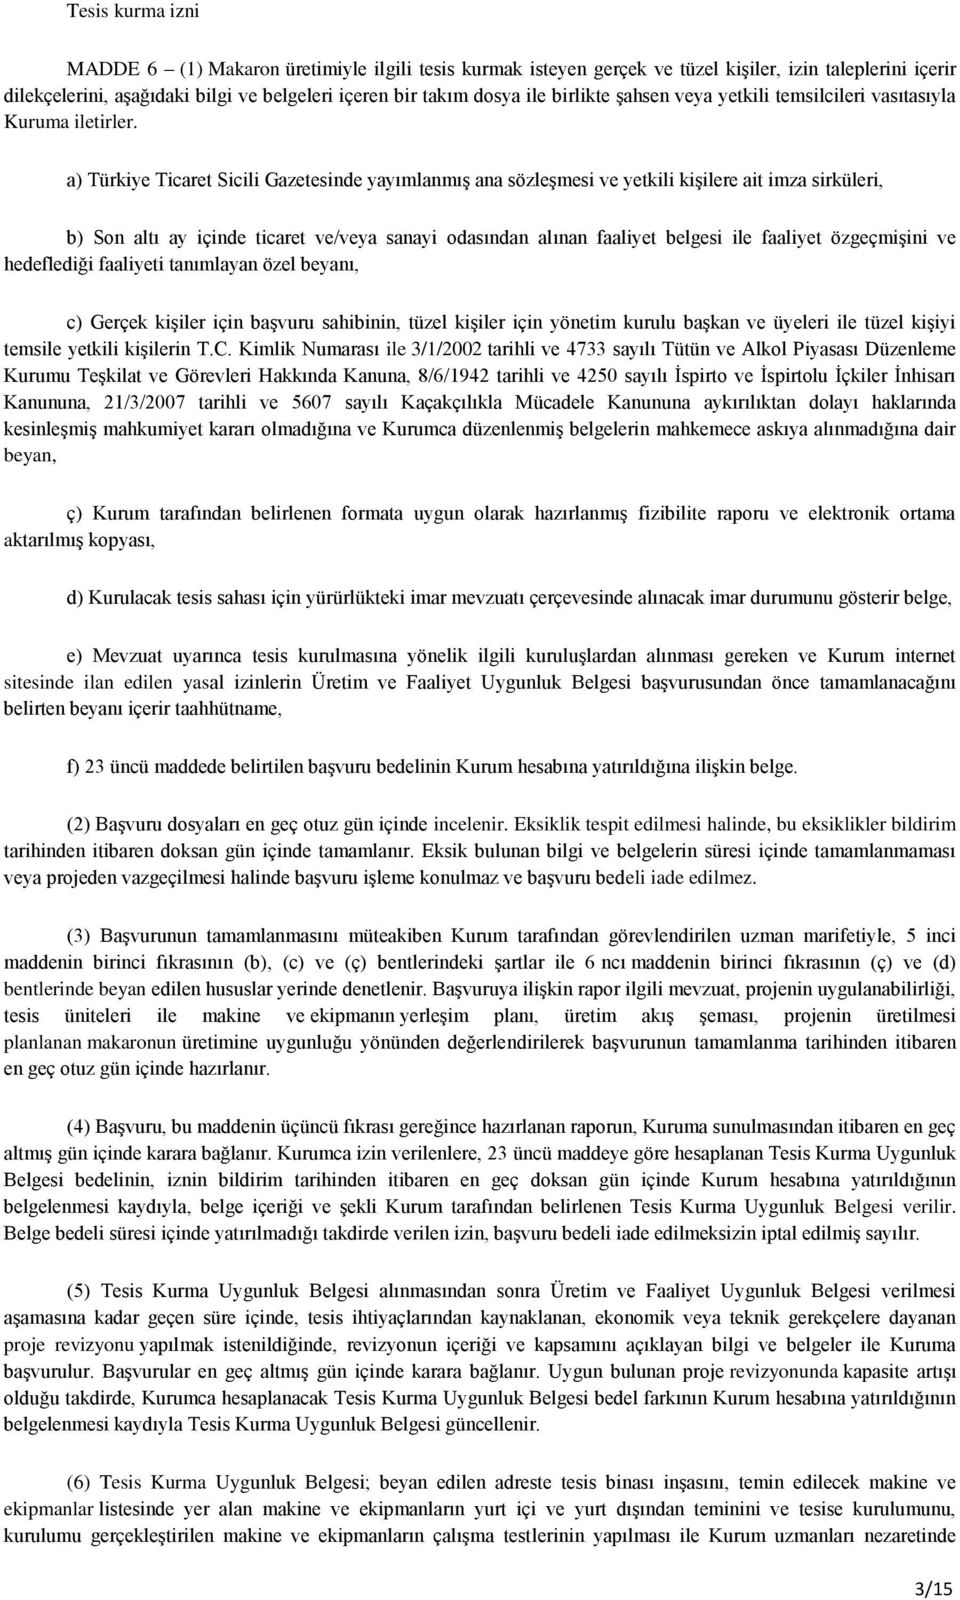 a) Türkiye Ticaret Sicili Gazetesinde yayımlanmış ana sözleşmesi ve yetkili kişilere ait imza sirküleri, b) Son altı ay içinde ticaret ve/veya sanayi odasından alınan faaliyet belgesi ile faaliyet